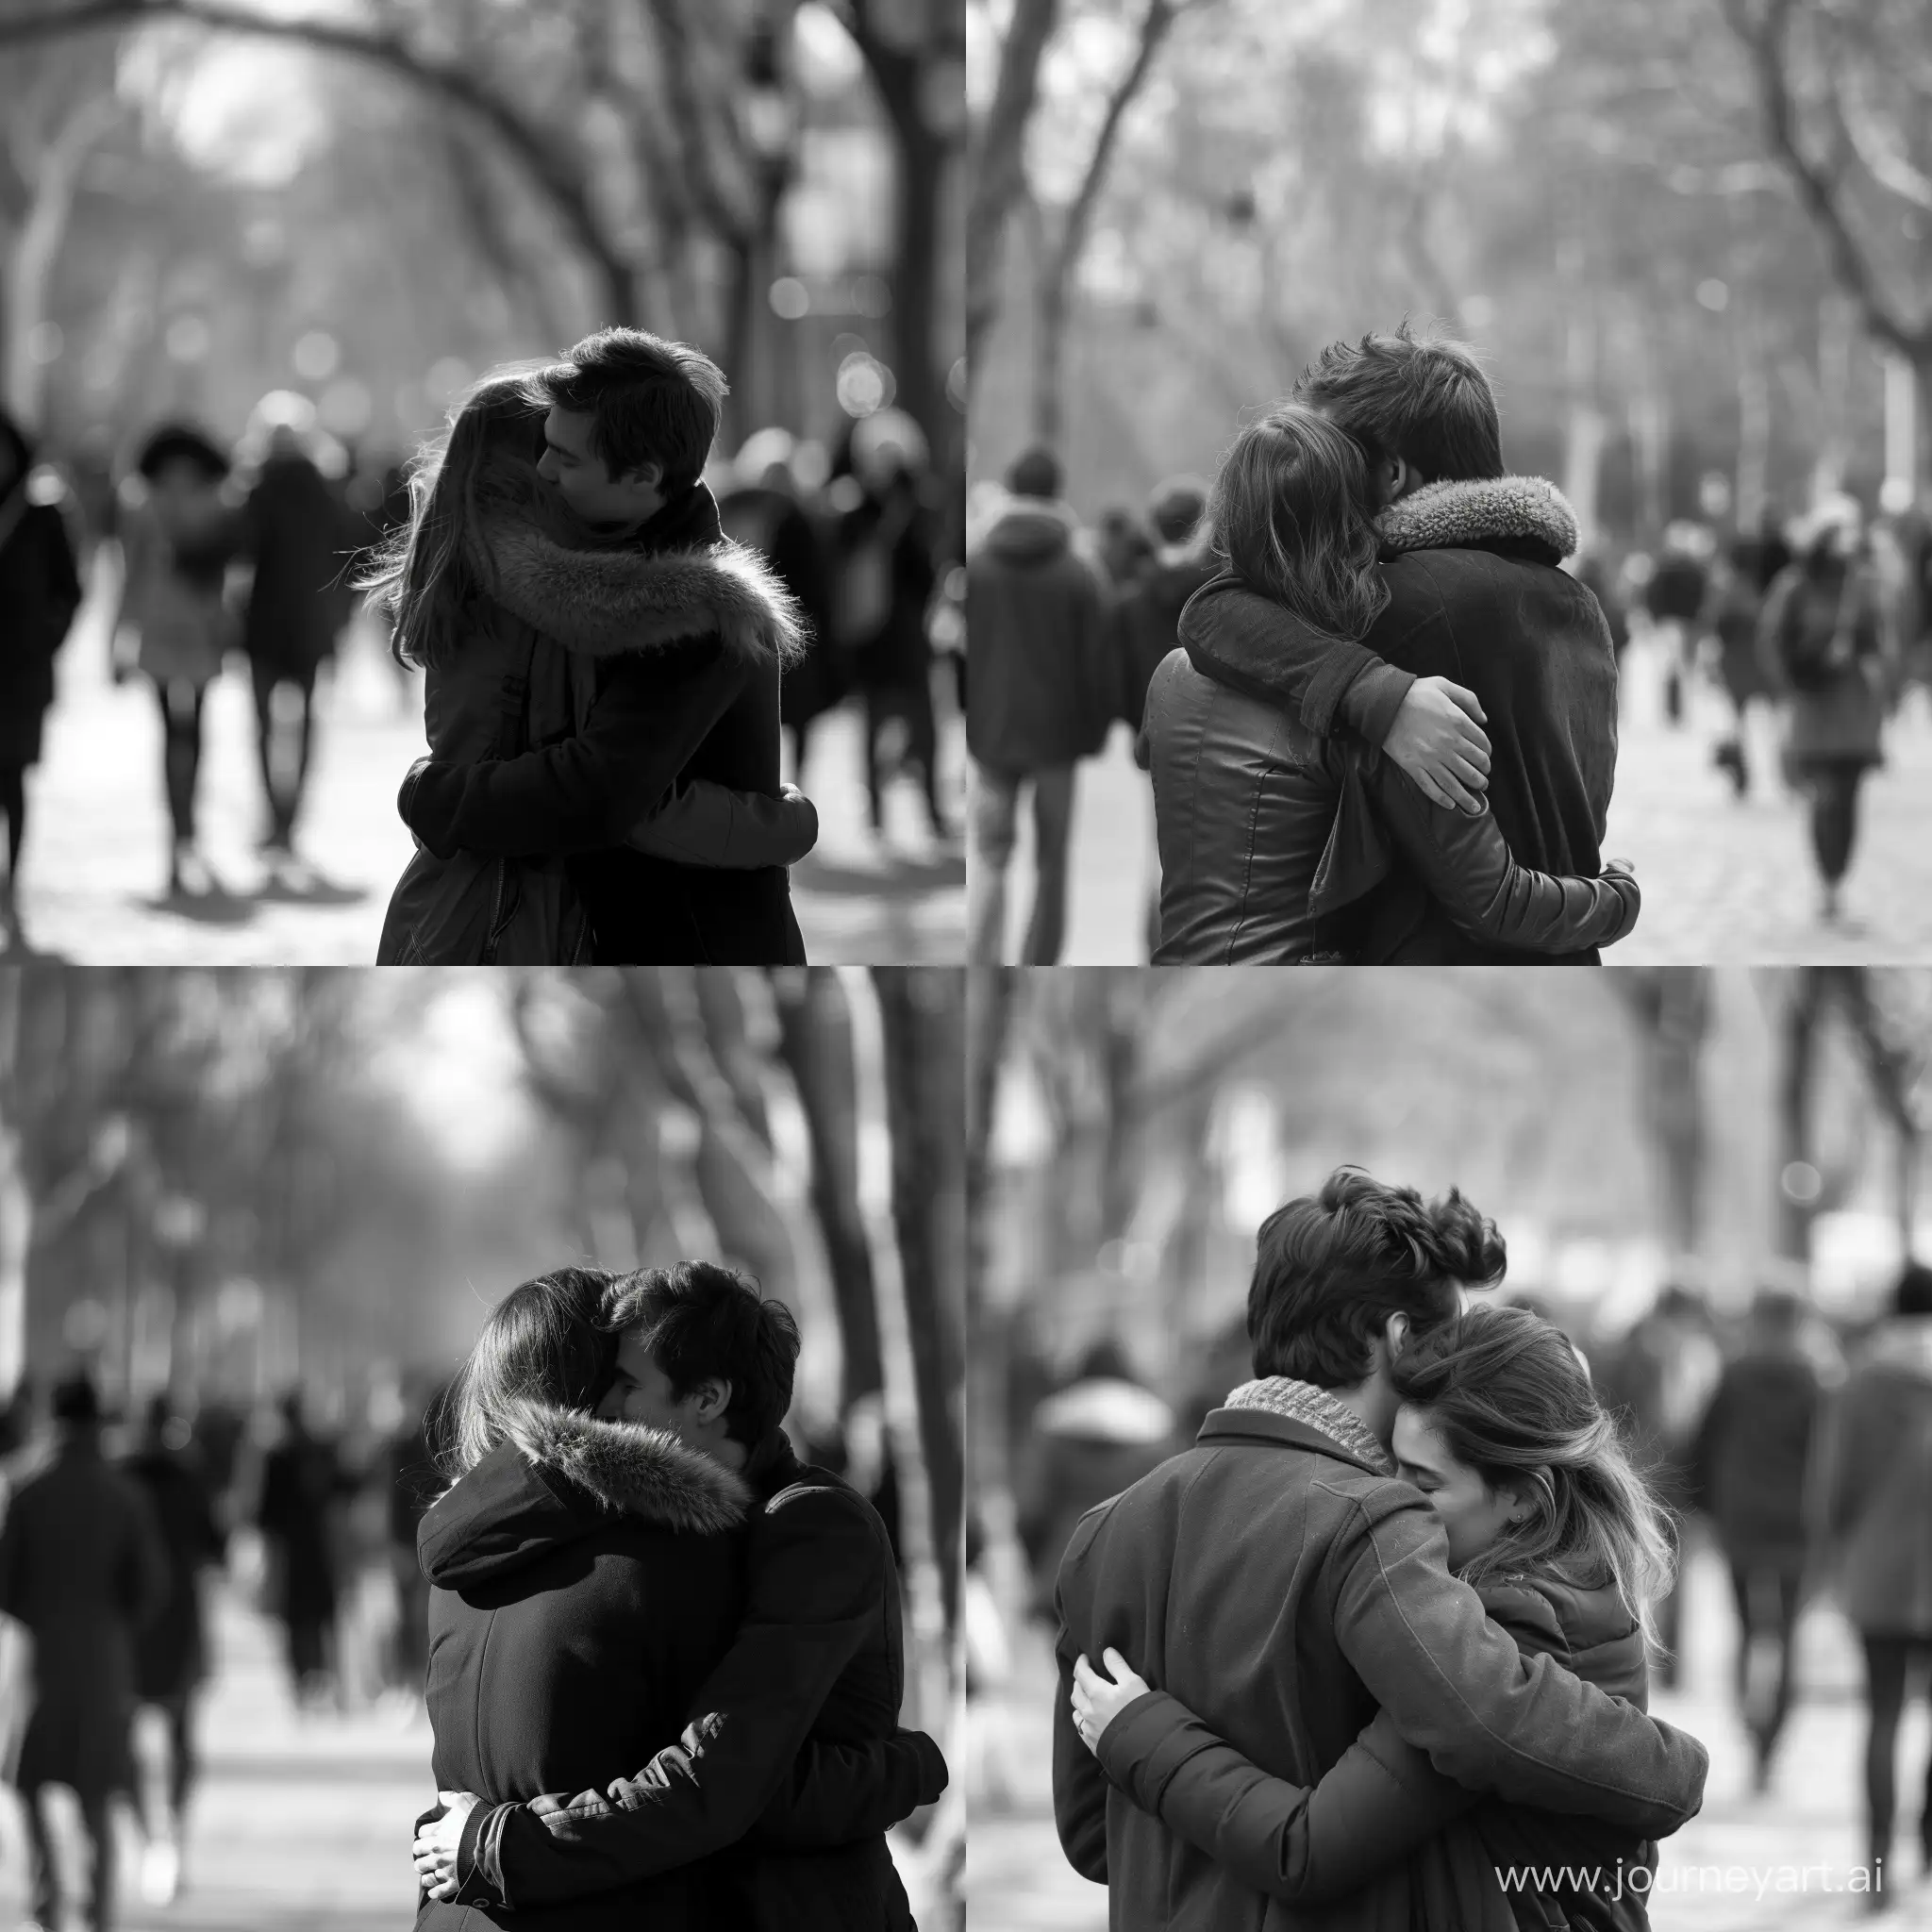 2 innamorati, di spalle abbracciati, in un parco, con persone che passeggiano sfuocate, stile bianco e nero 